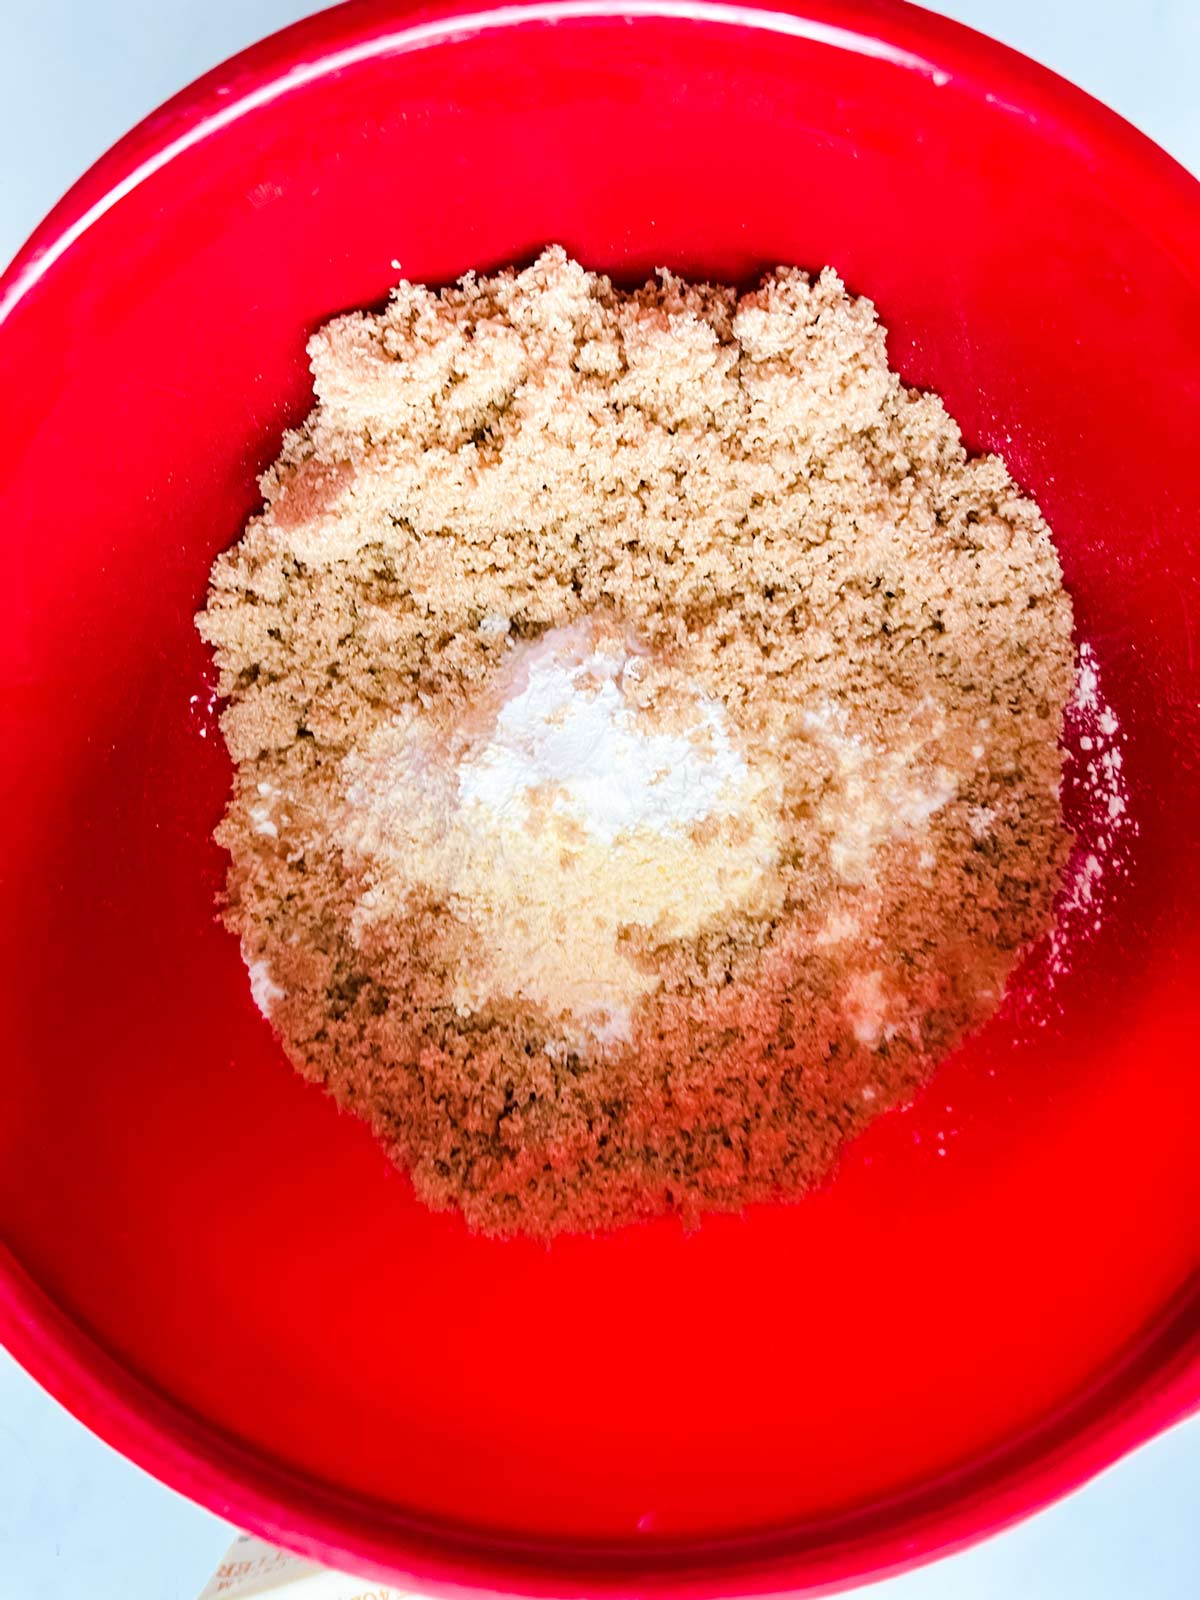 Flour, cornmeal, brown sugar, baking powder, and salt in a bowl.